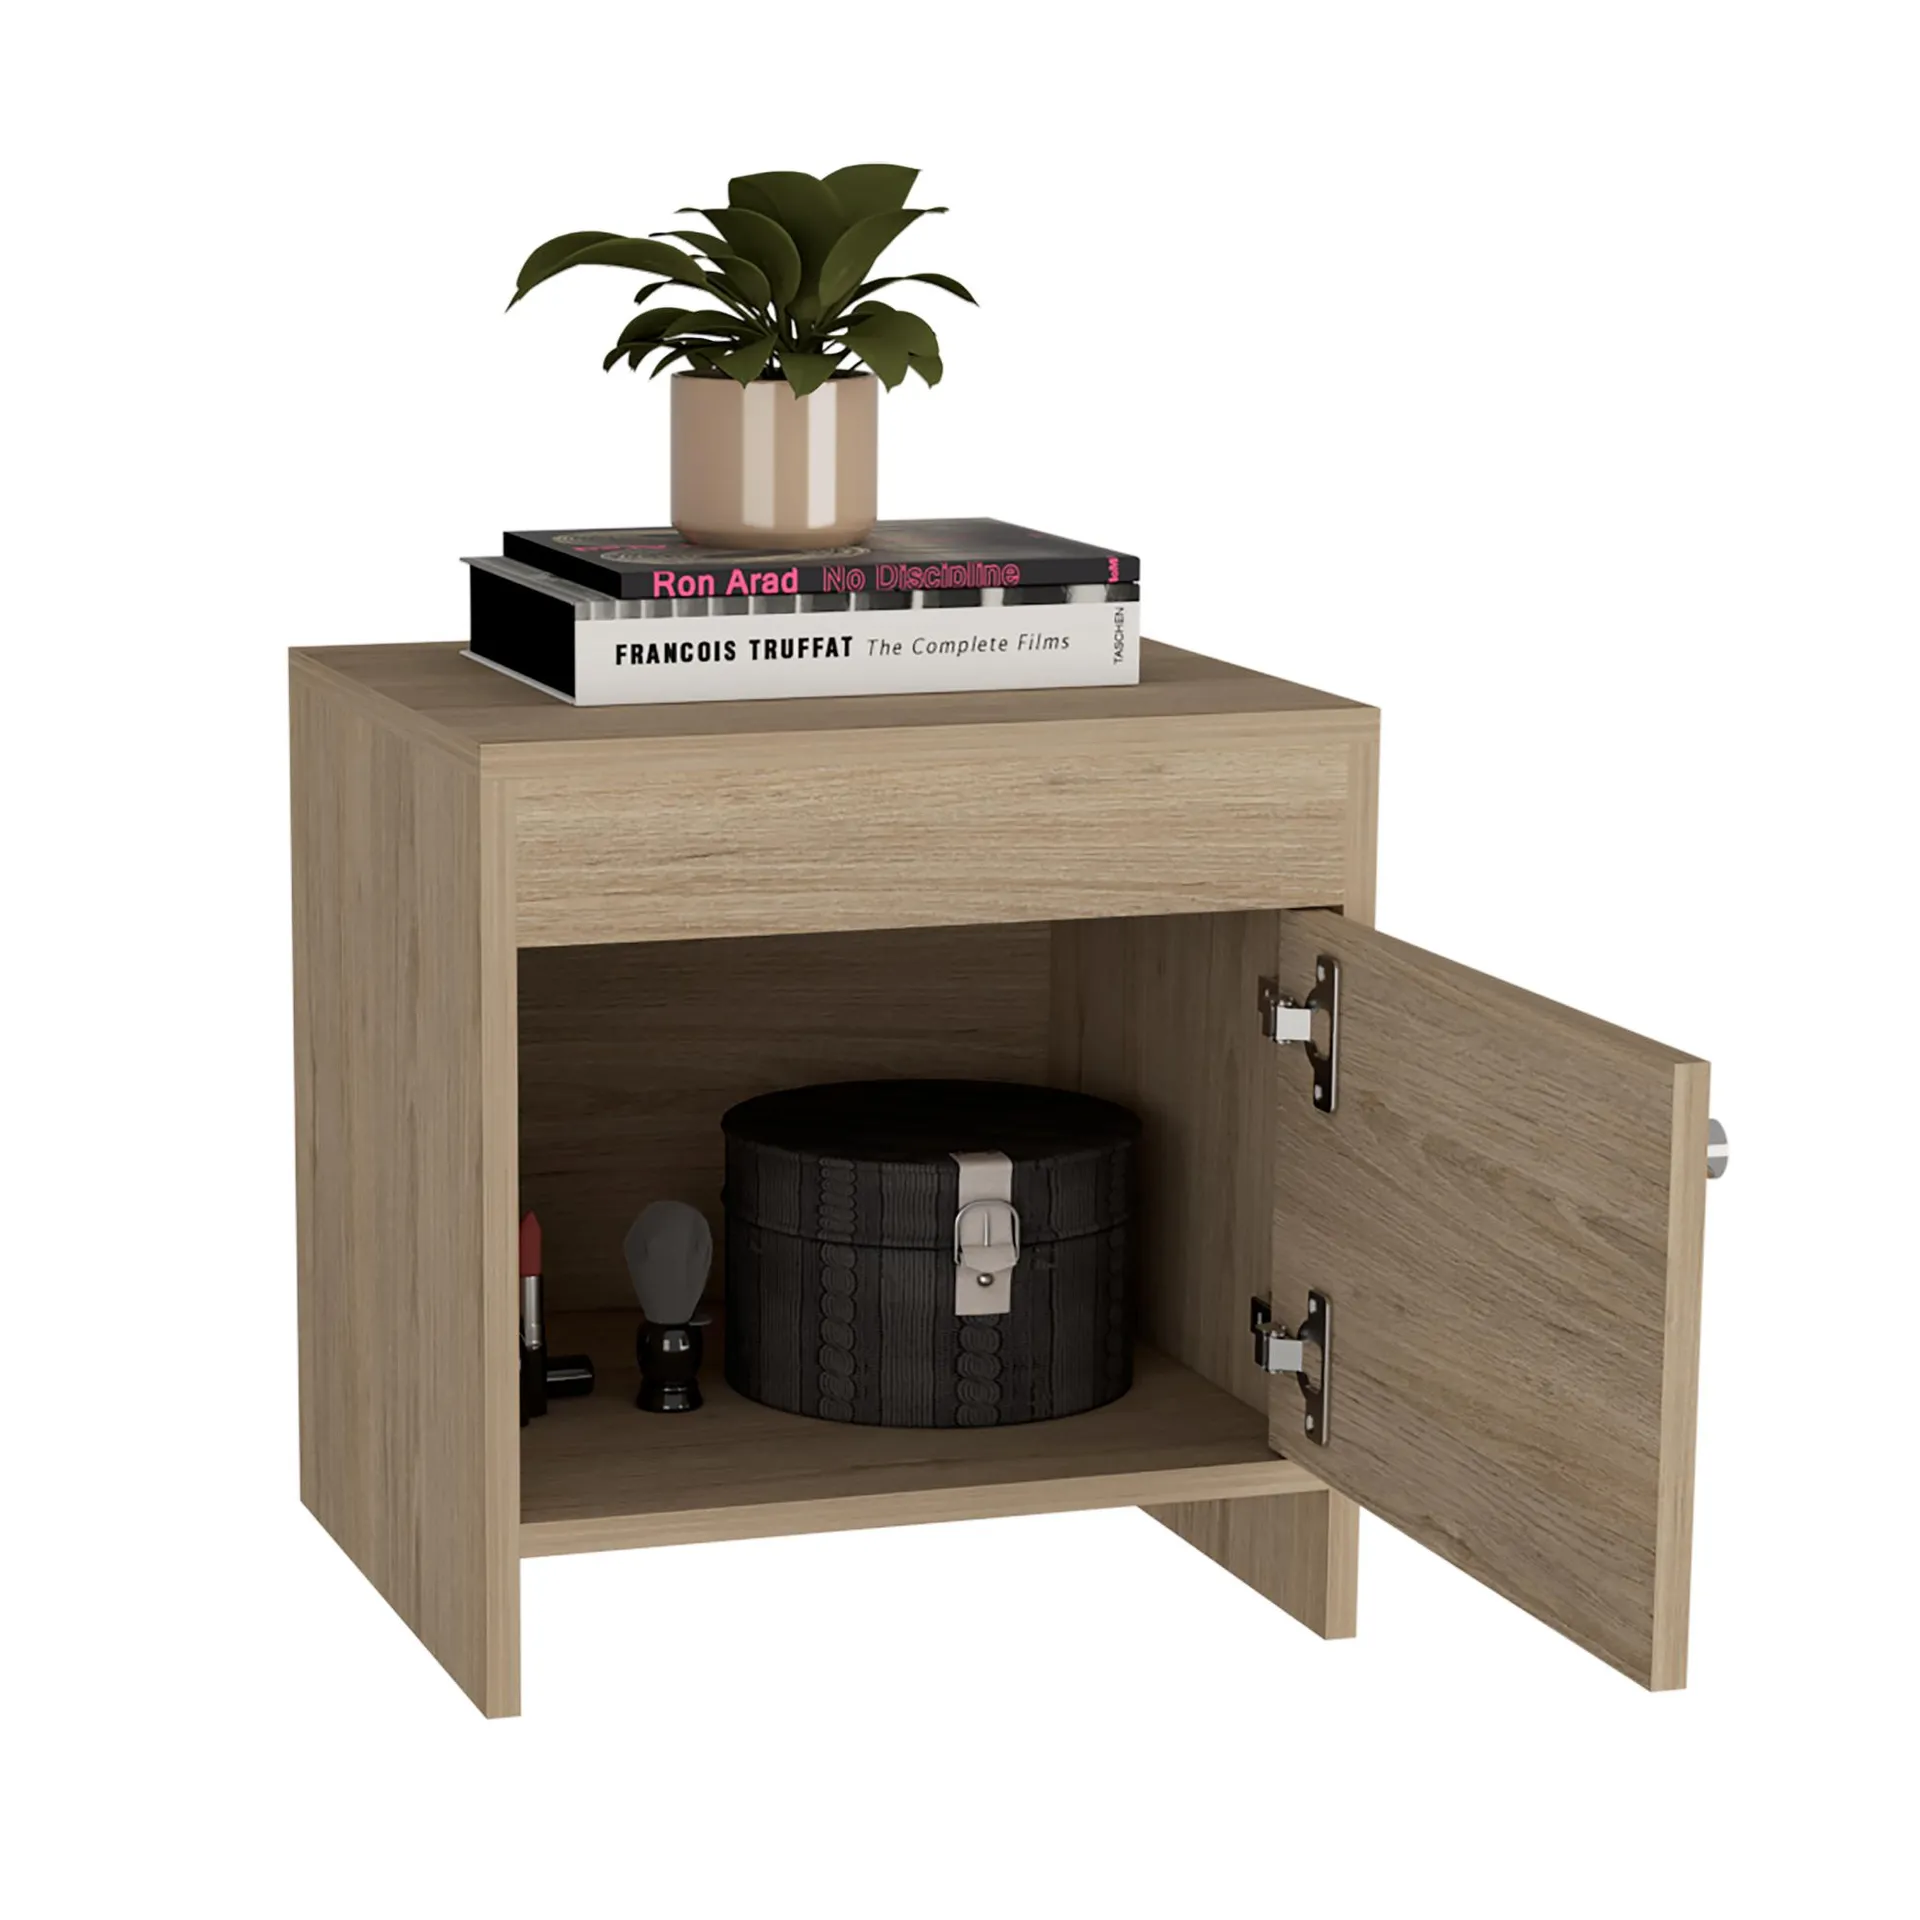 Mesa de noche tutto, beige, con cajón para guardar objetos ideal para espacios reducidos